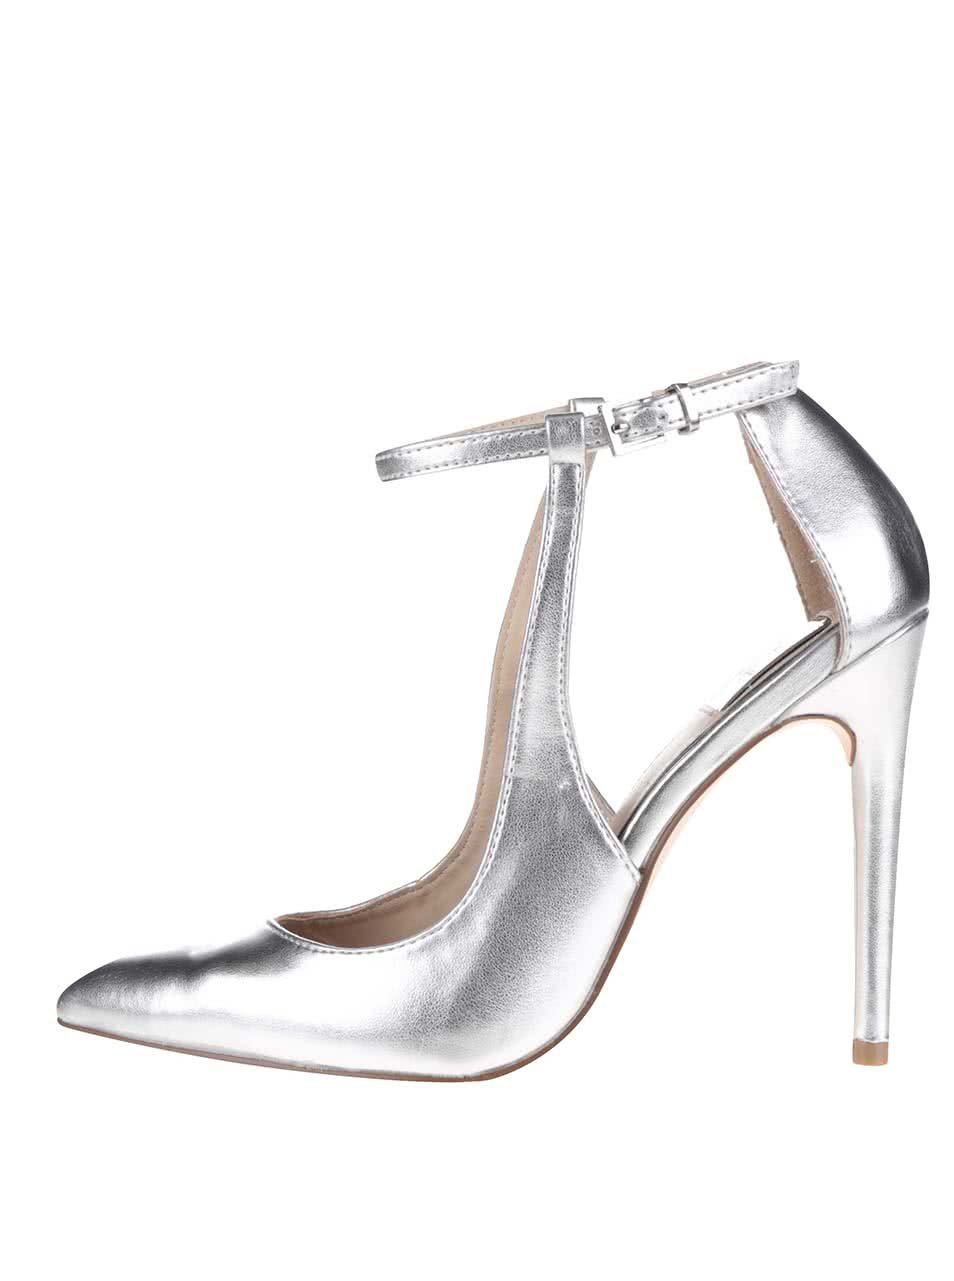 Metalické sandálky ve stříbrné barvě na podpatku Miss Selfridge Lilly